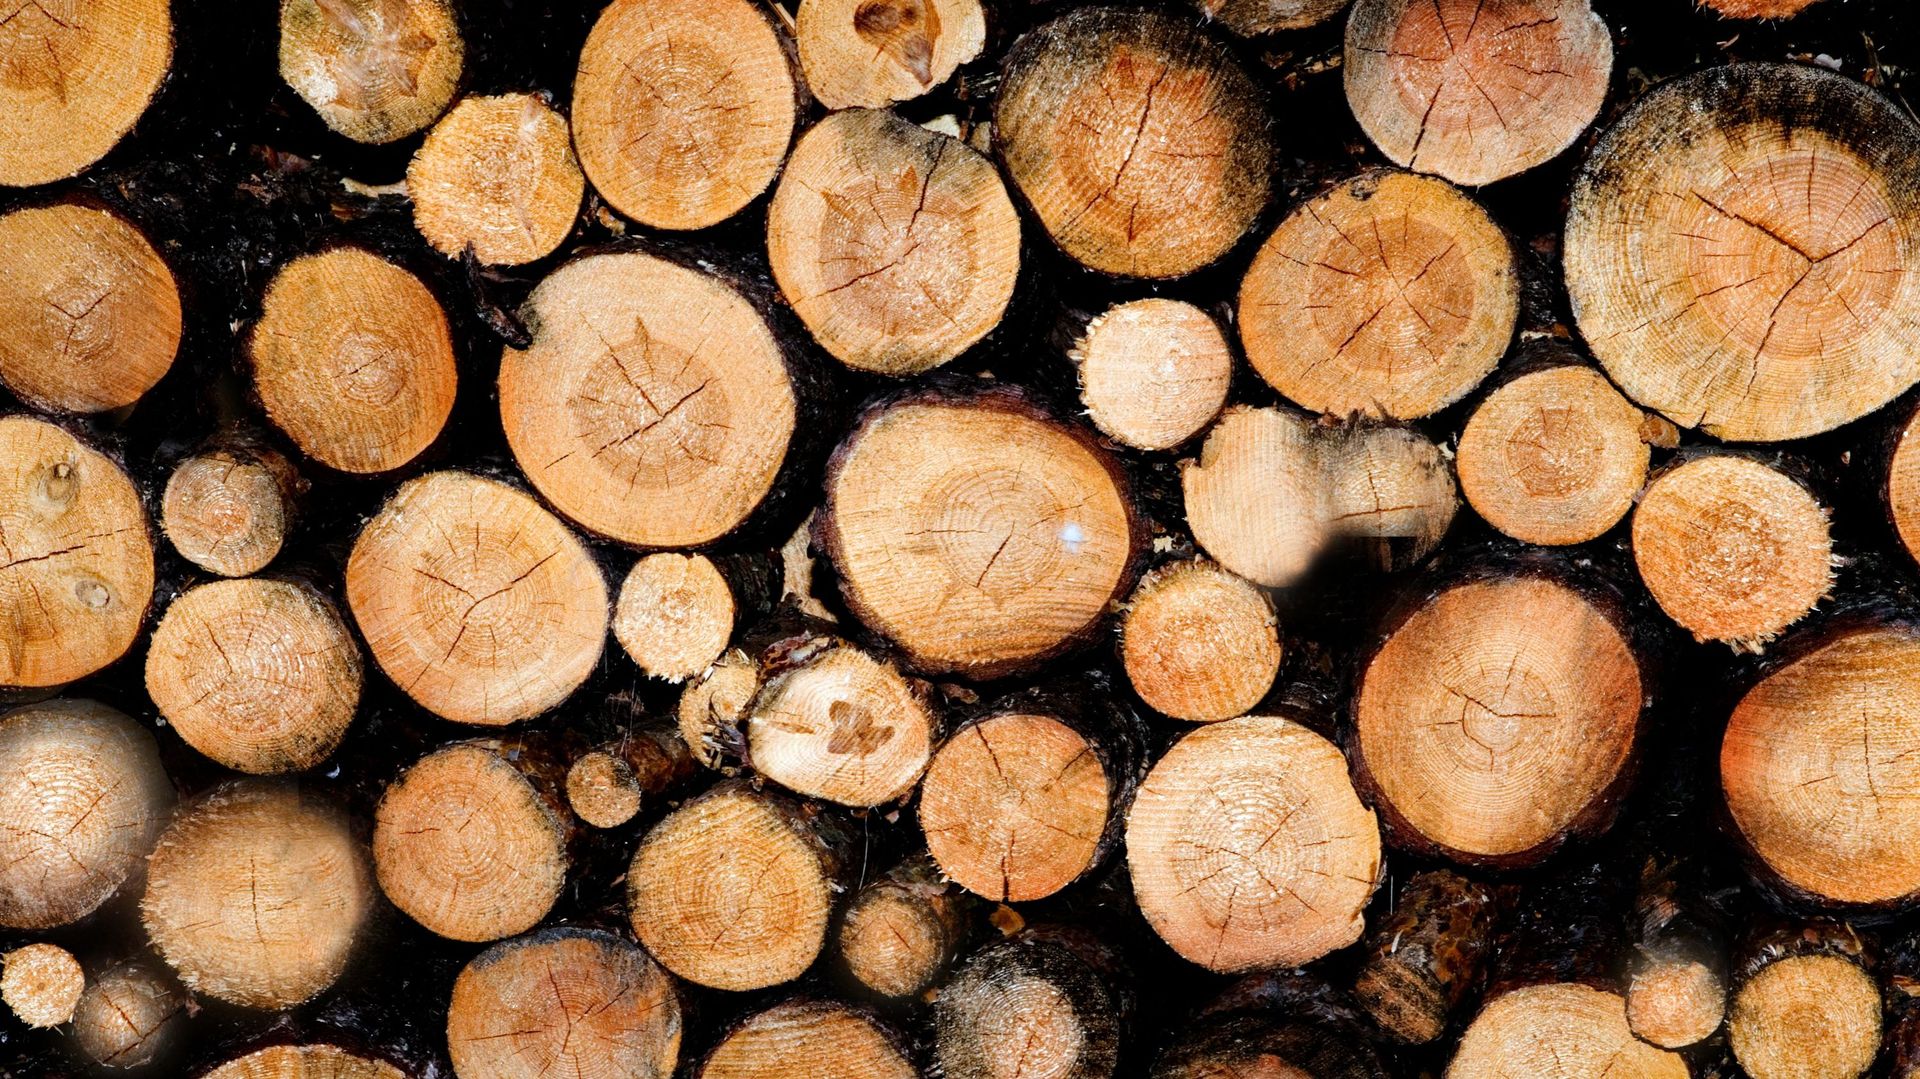 Les scieries belges s'inquiètent de la pénurie de bois